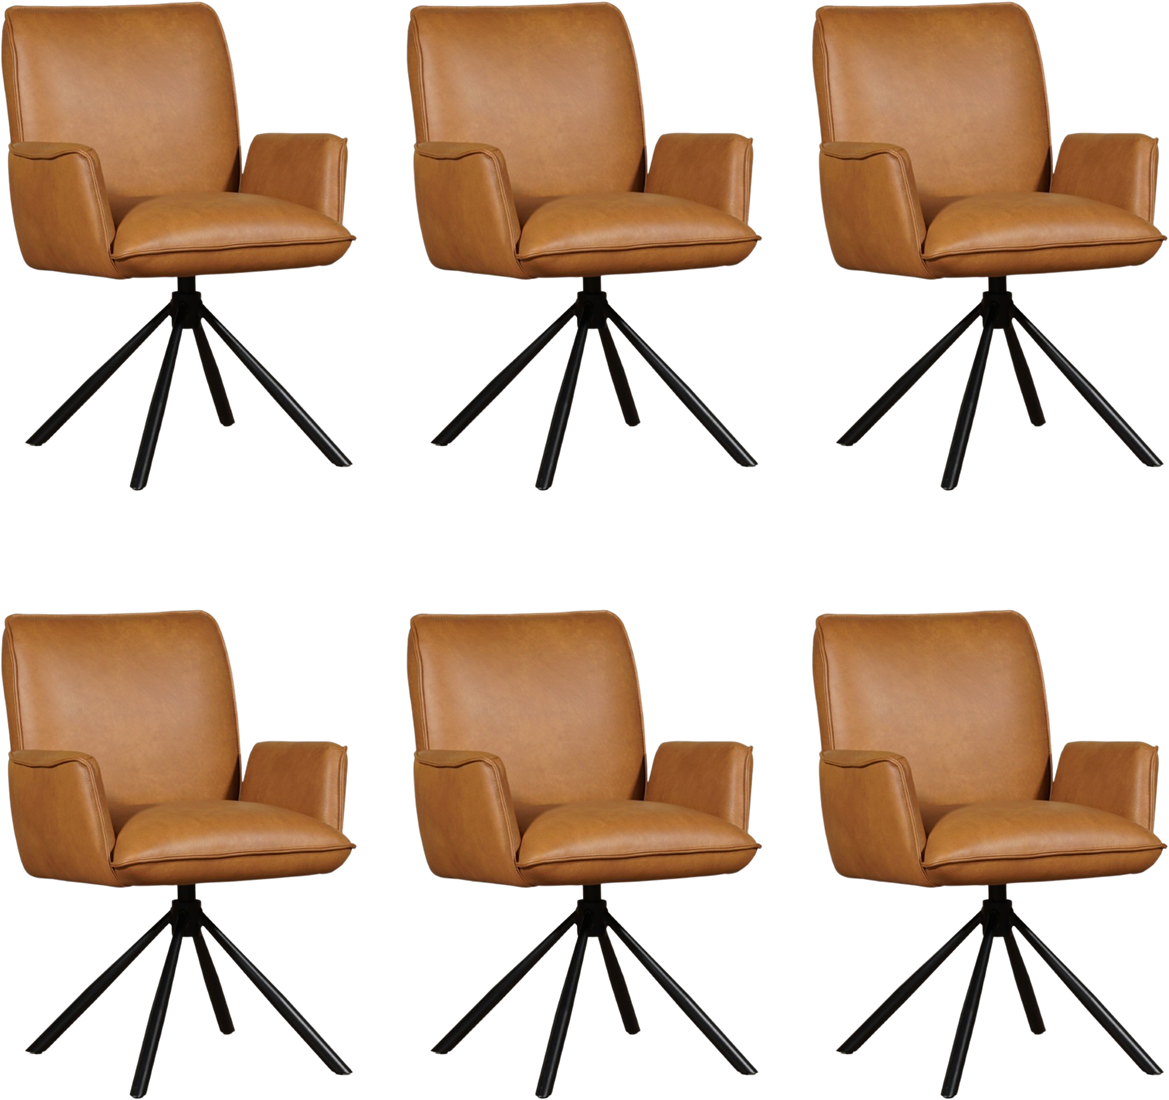 Leren eetkamerstoel Elite - - automatisch terug naar beginstand - set van 6 stoelen ShopX